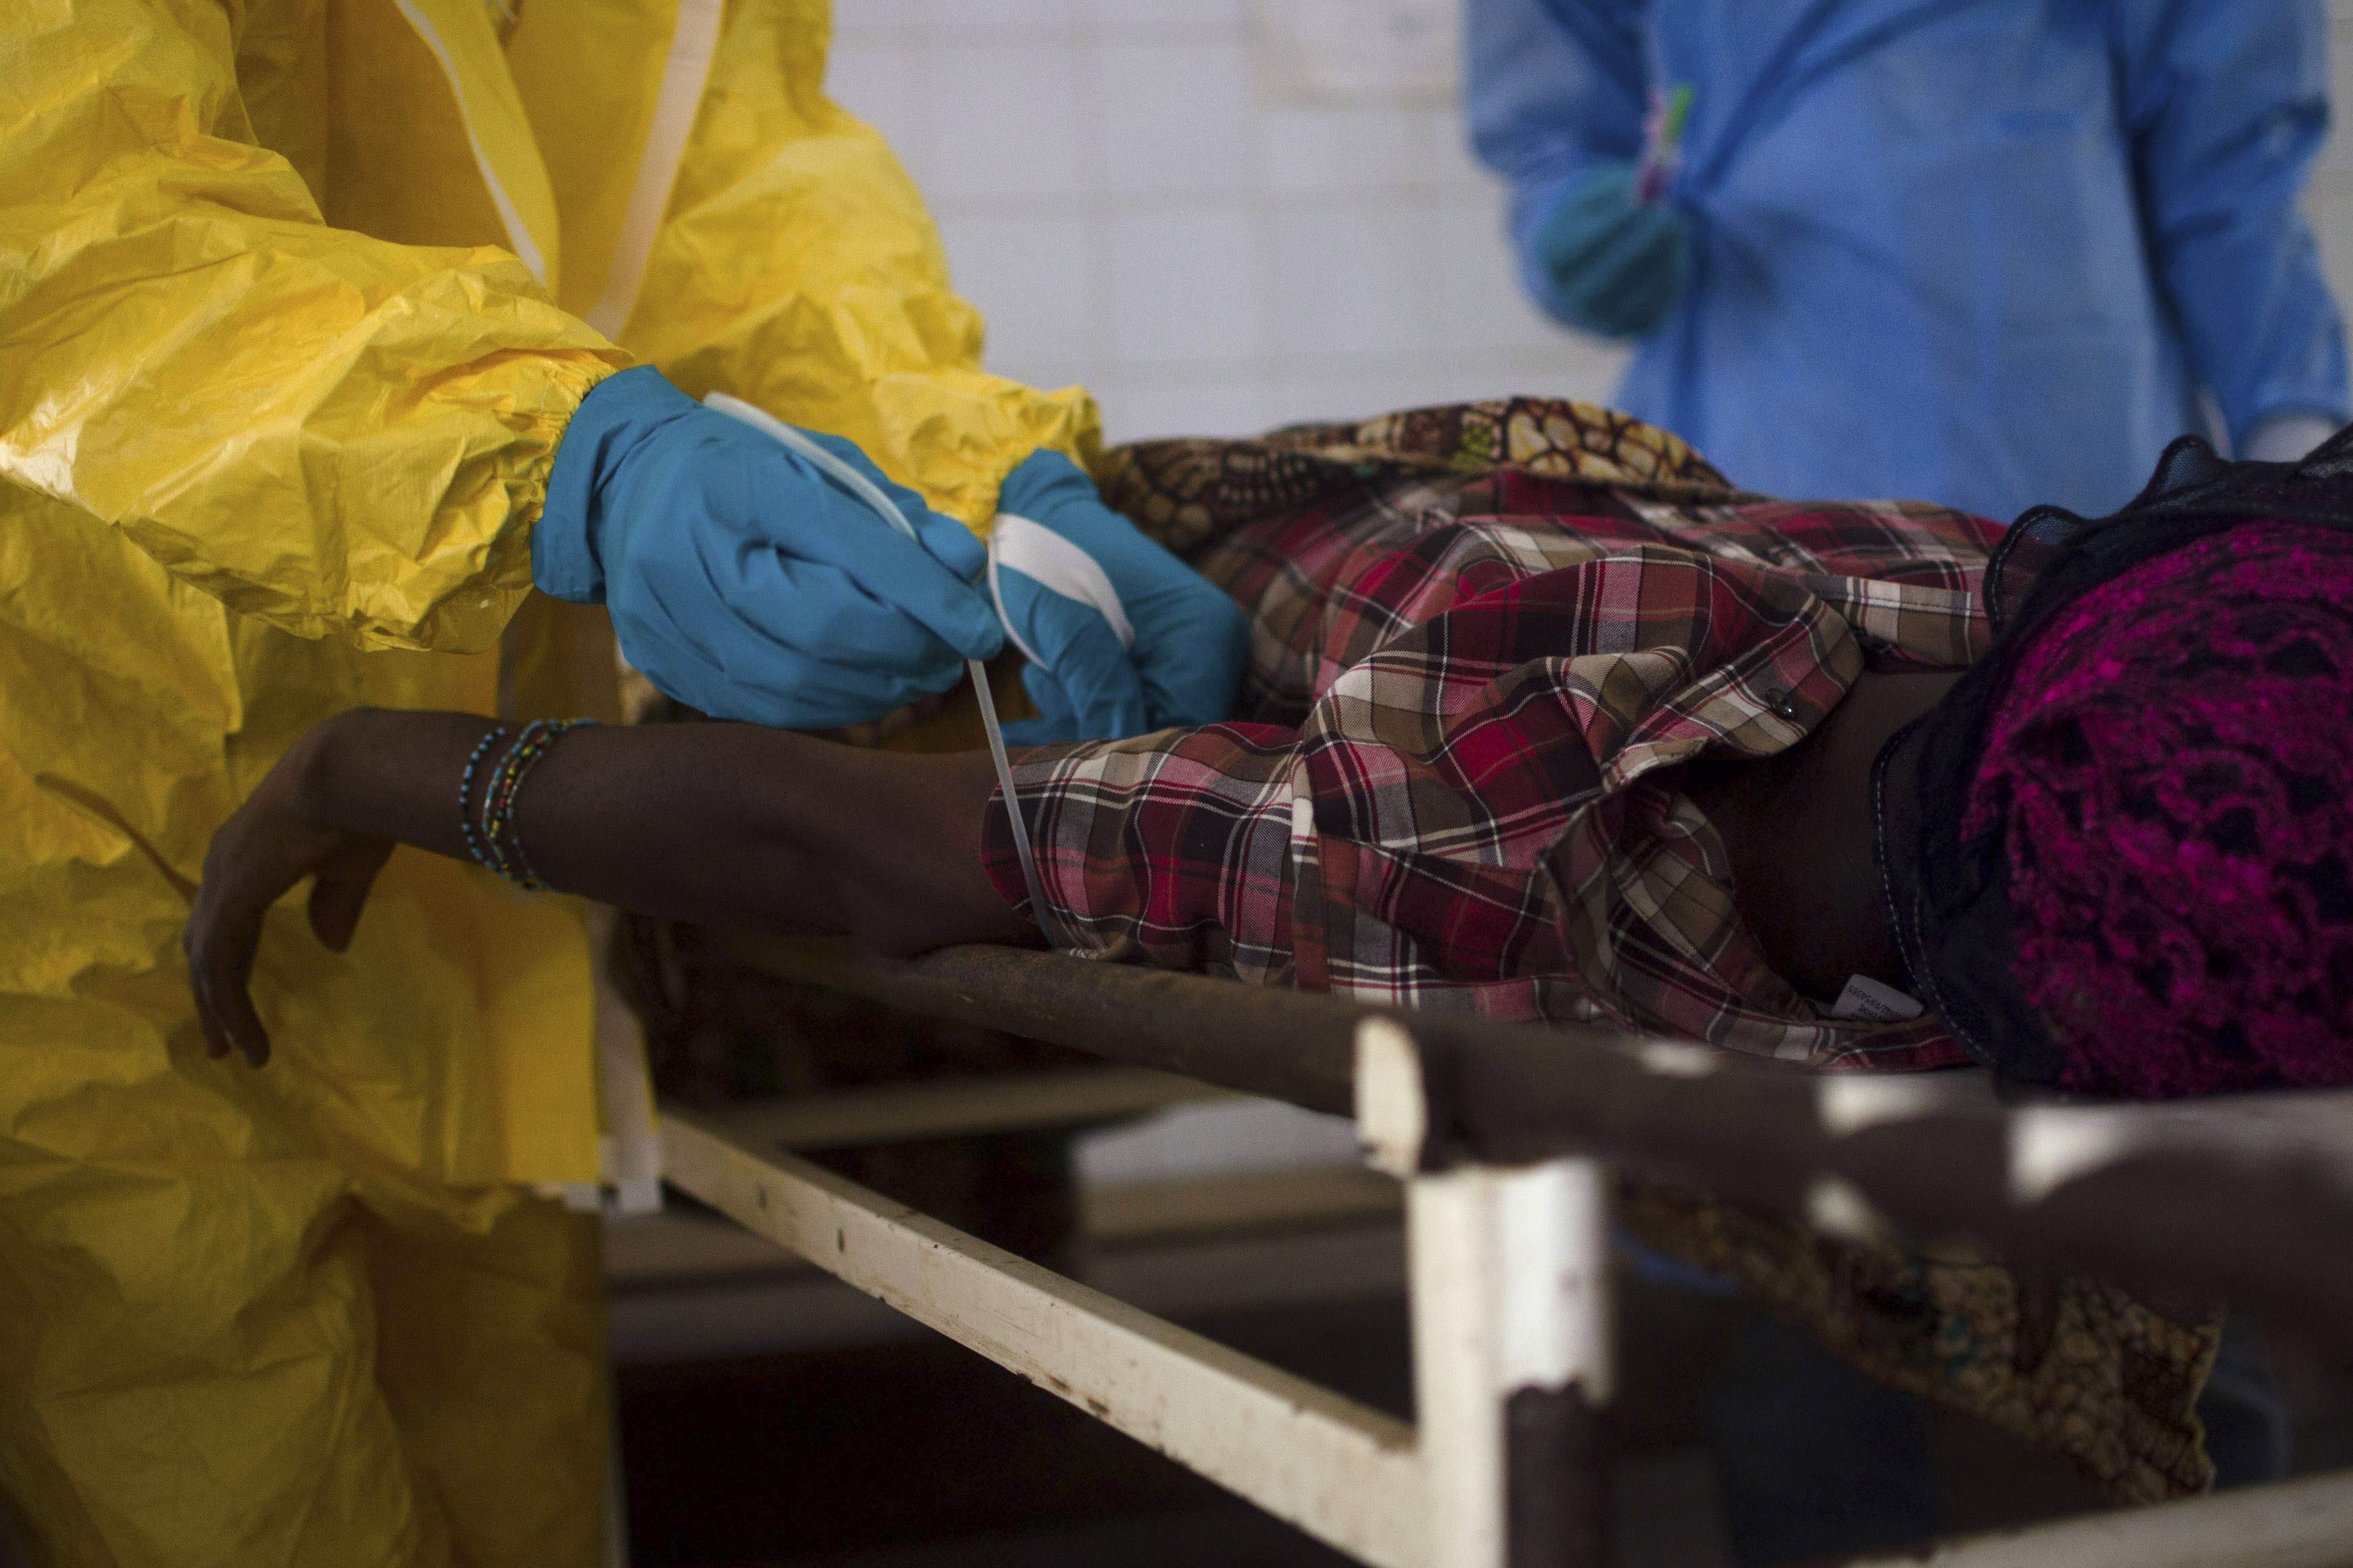 “Σκορπάει” νεκρούς ο αιμορραγικός πυρετός – Αναζητείται γυναίκα που έχει προσβληθεί από τον ιό Έμπολα